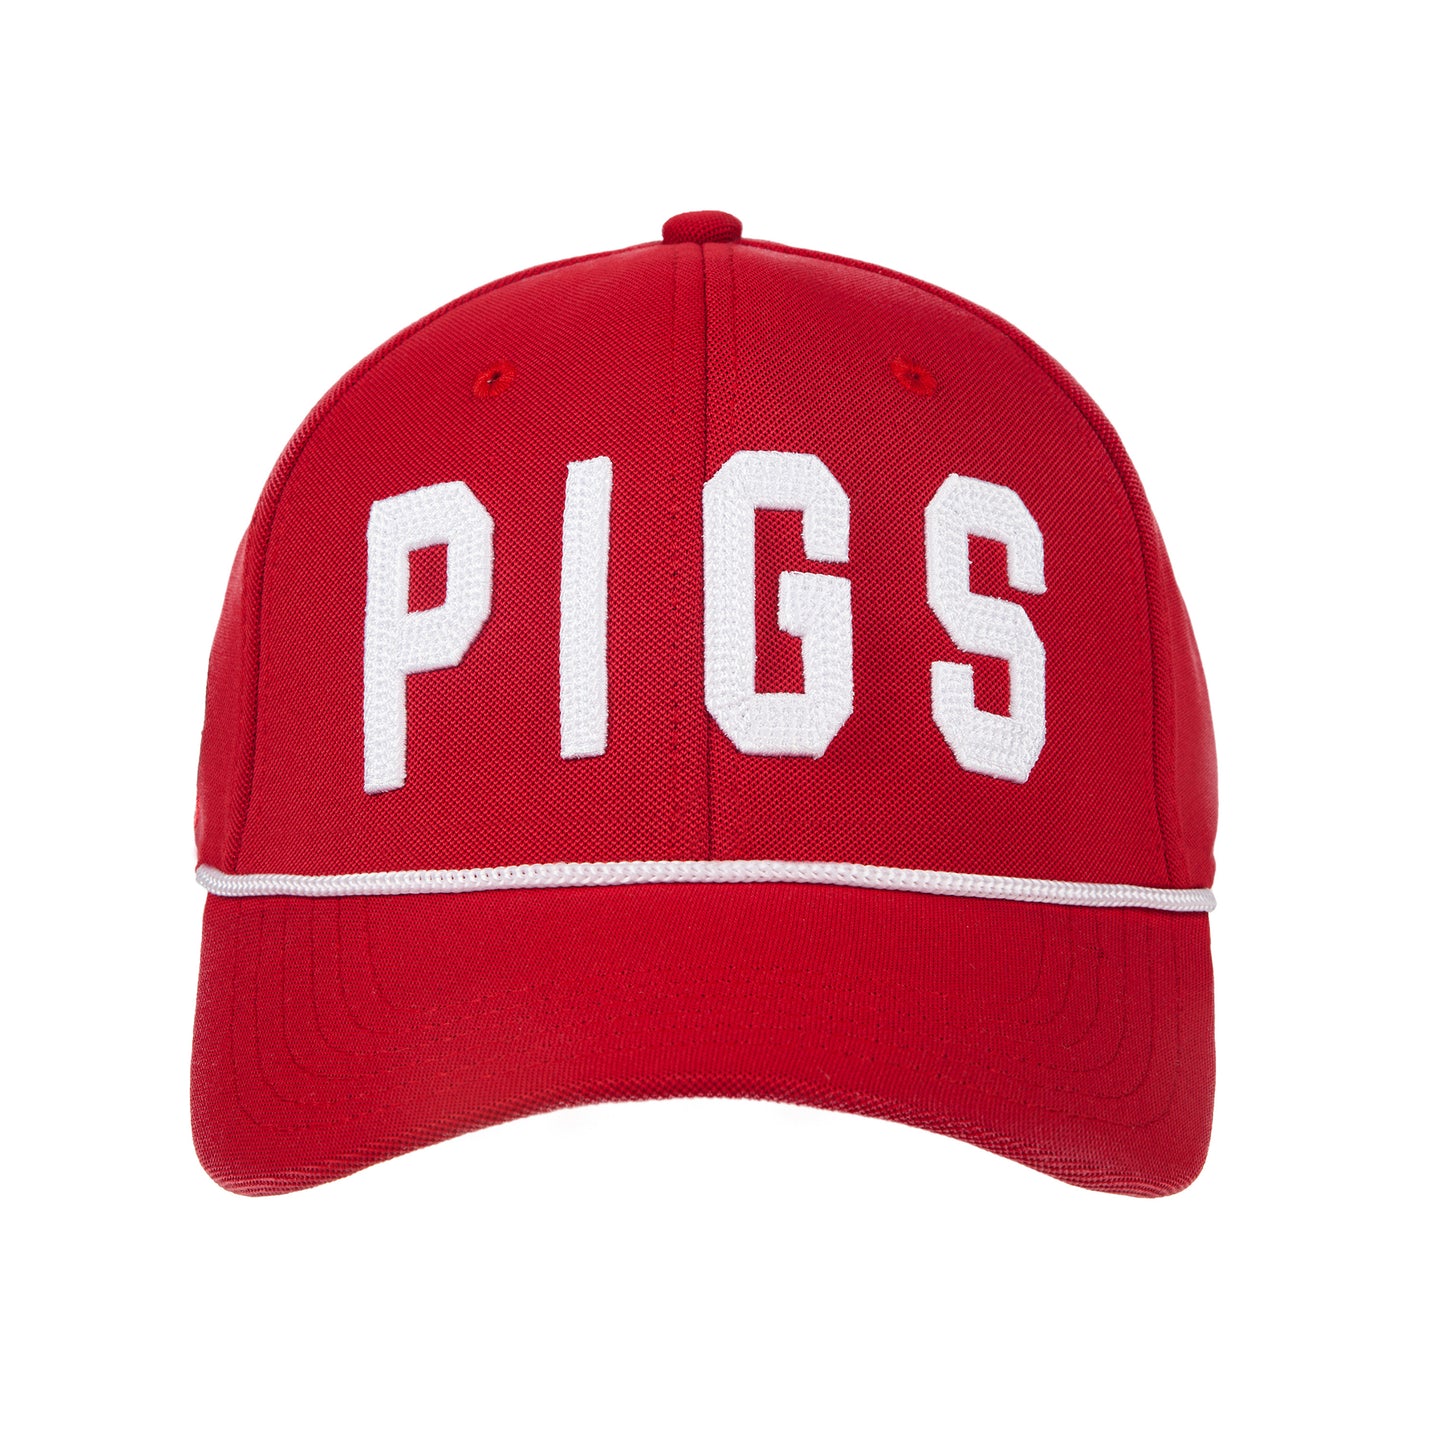 "OG" PIGS - Red - Snapback - Curved Bill